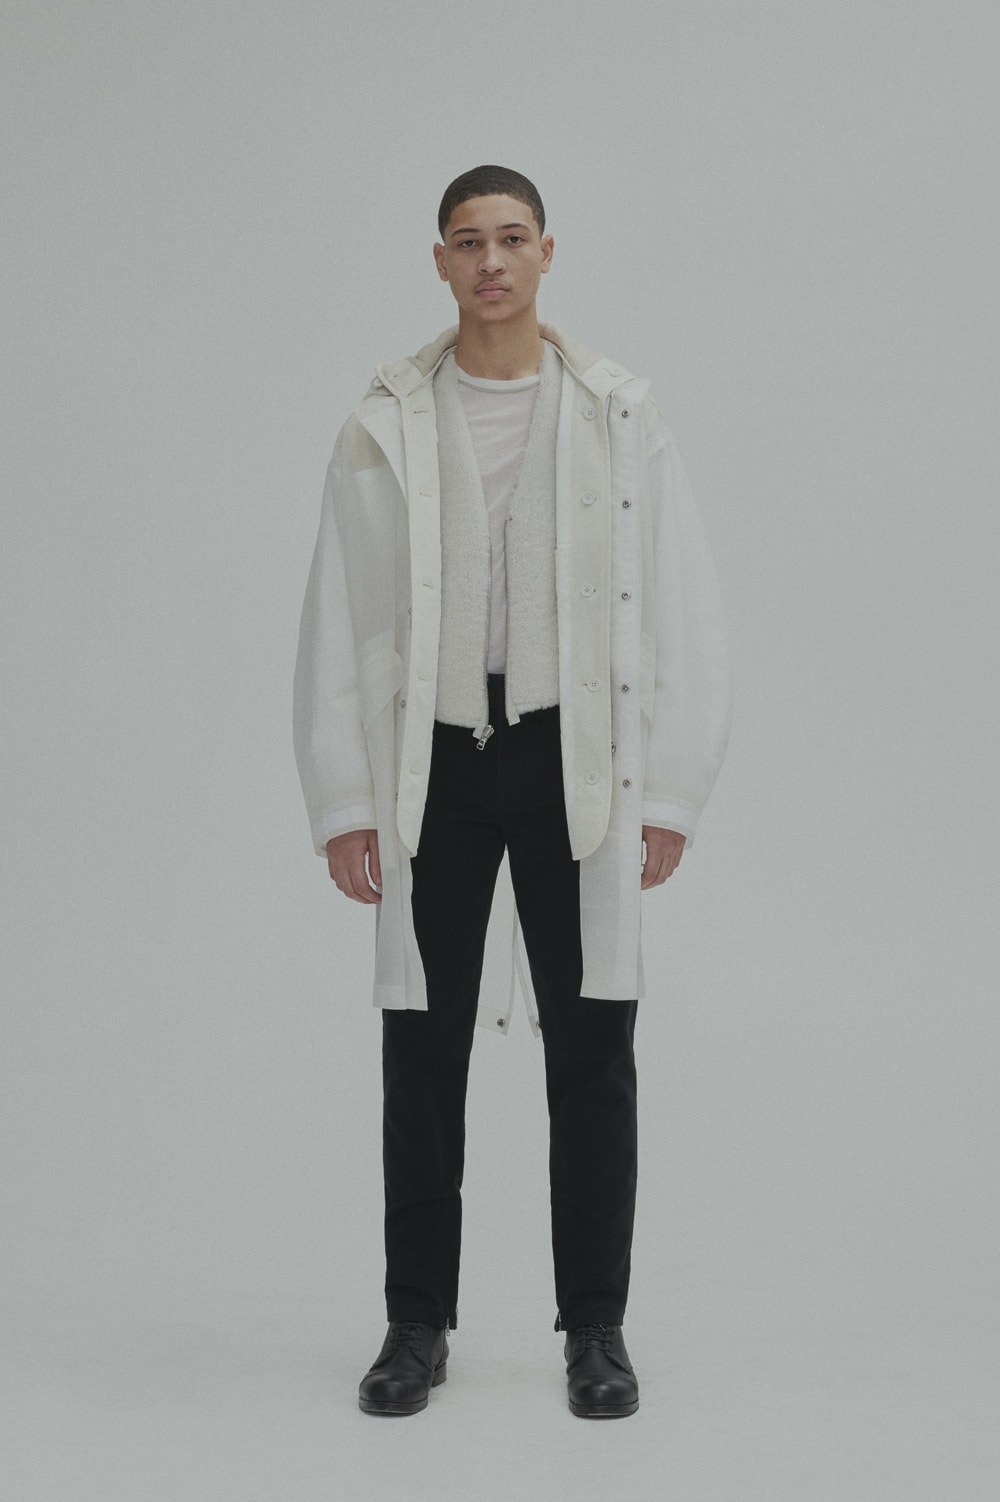 Helmut Lang Fall Winter 2018 Lookbook Jackets Outerwear Shirts Pants Jeans Puffer Sheer Branding Logo